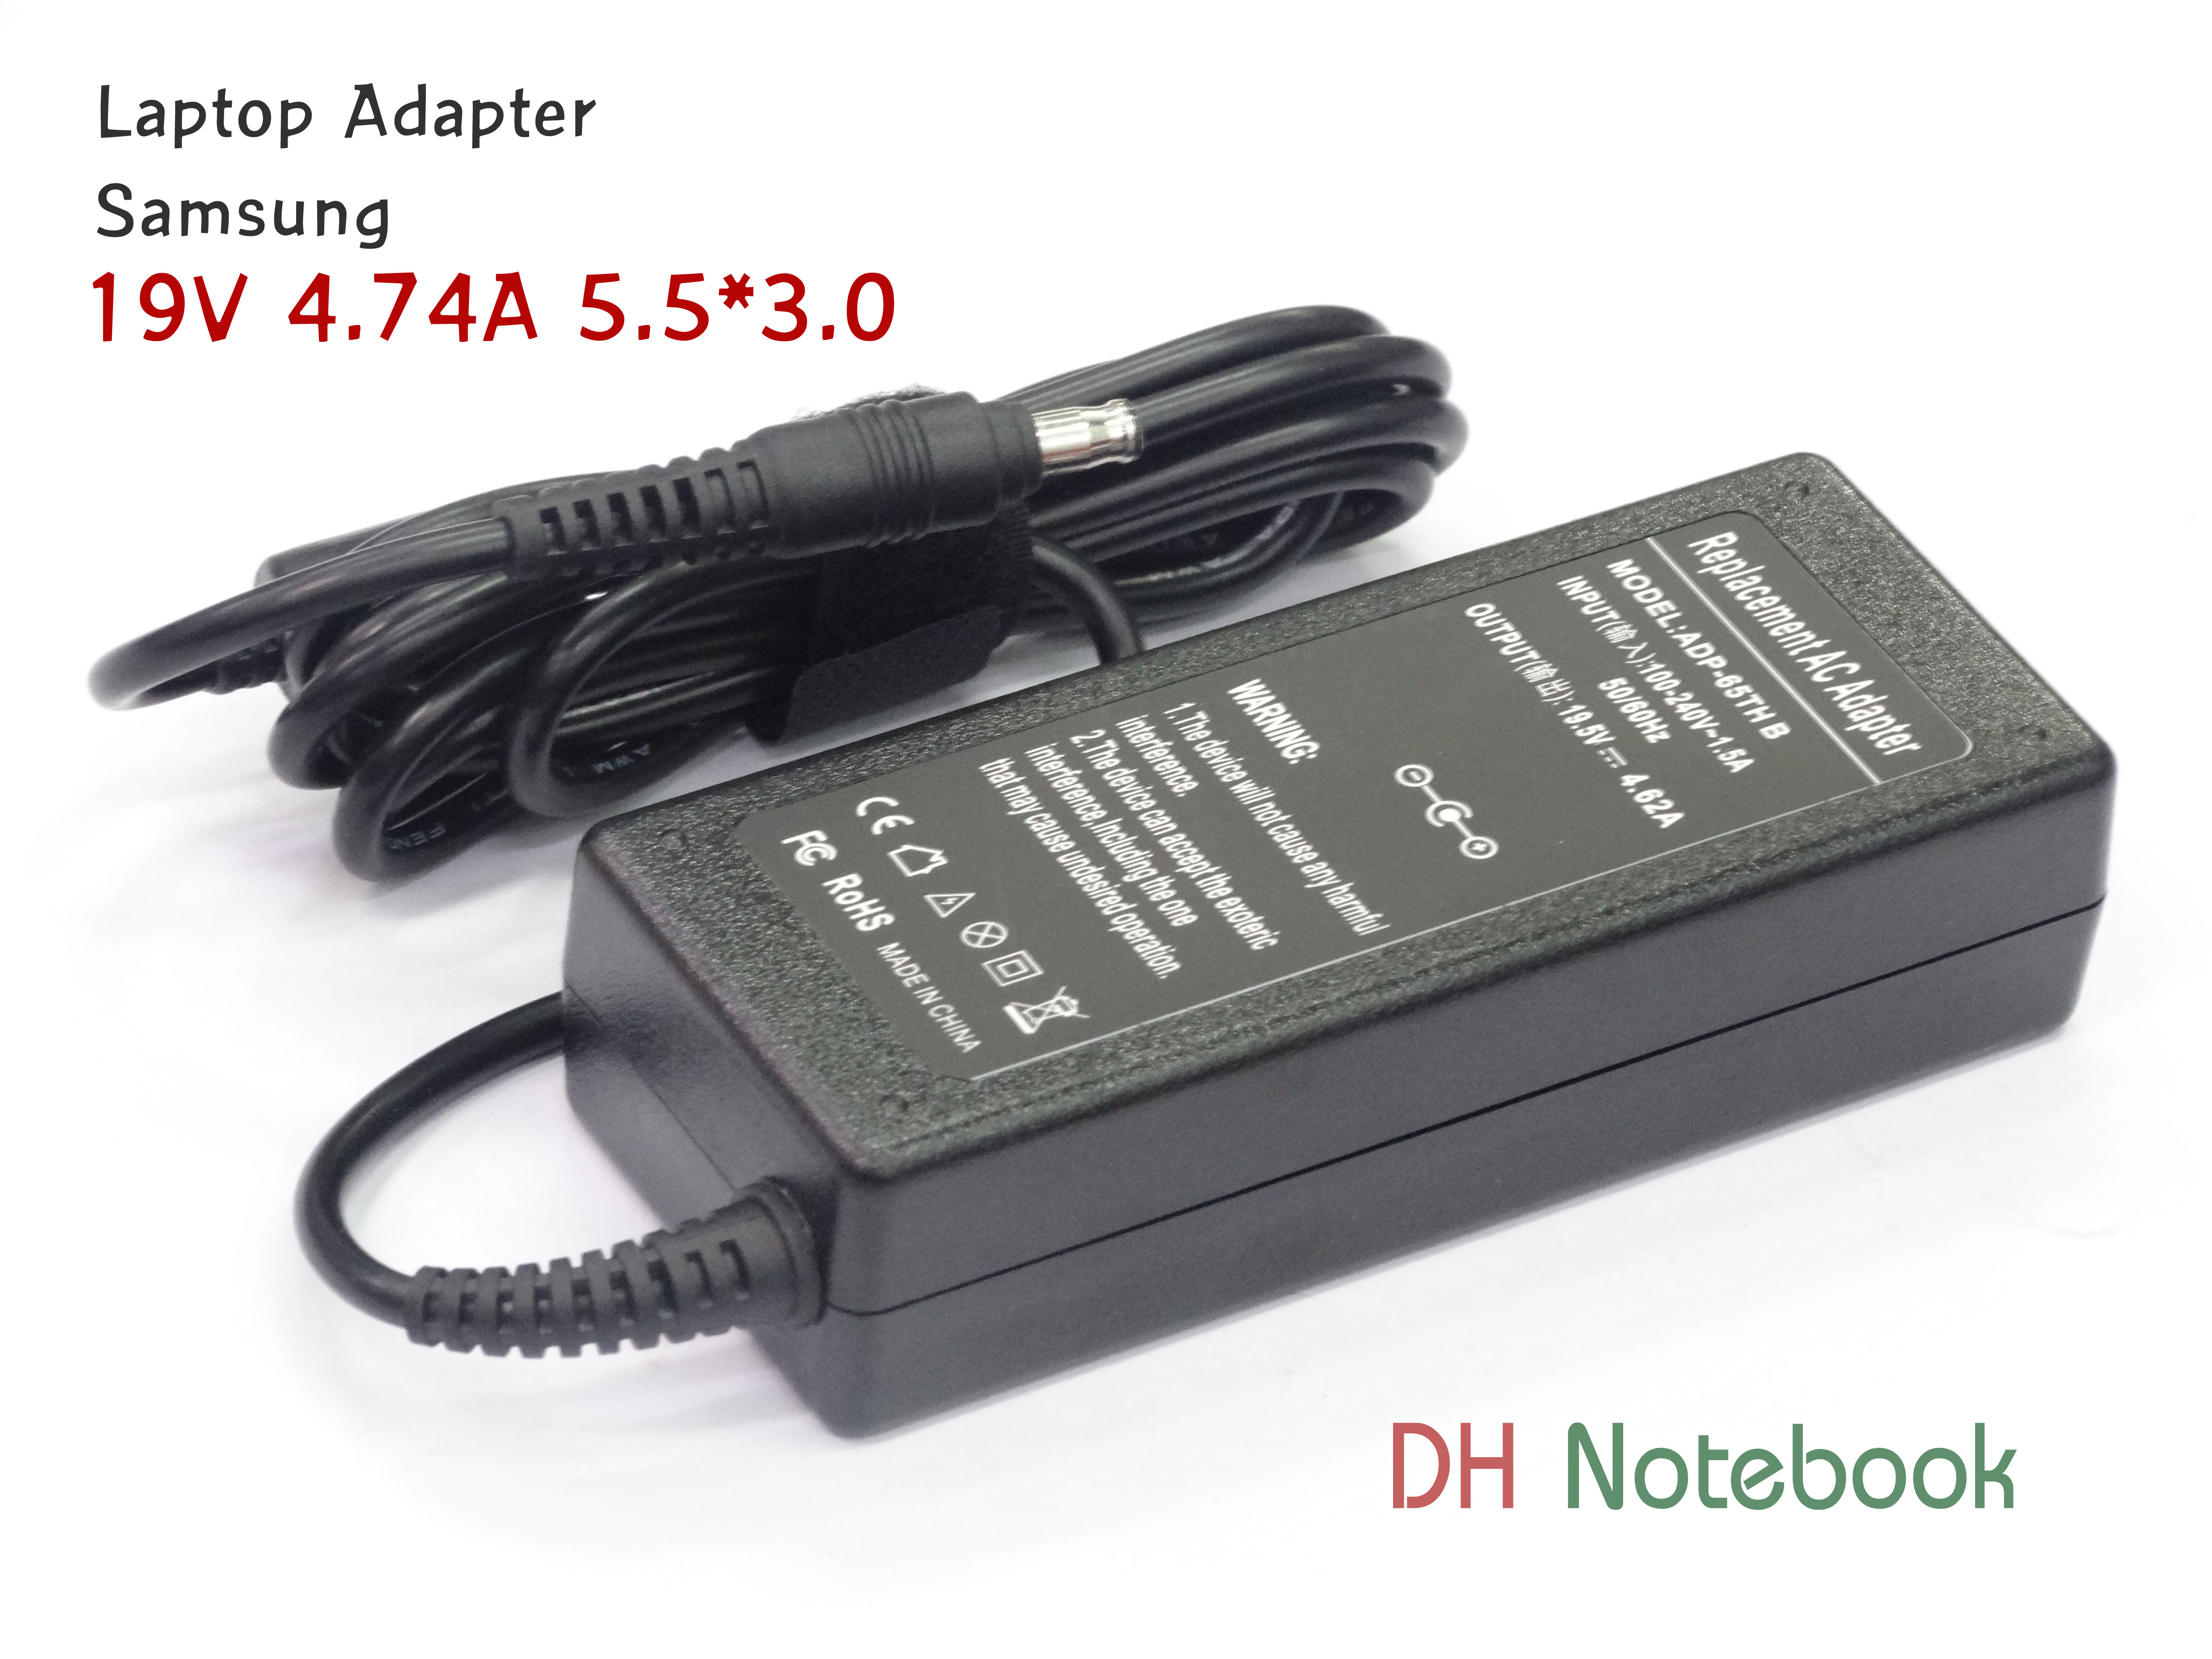 Adapter SAMSUNG 19V 4.74A 5.5*3.0